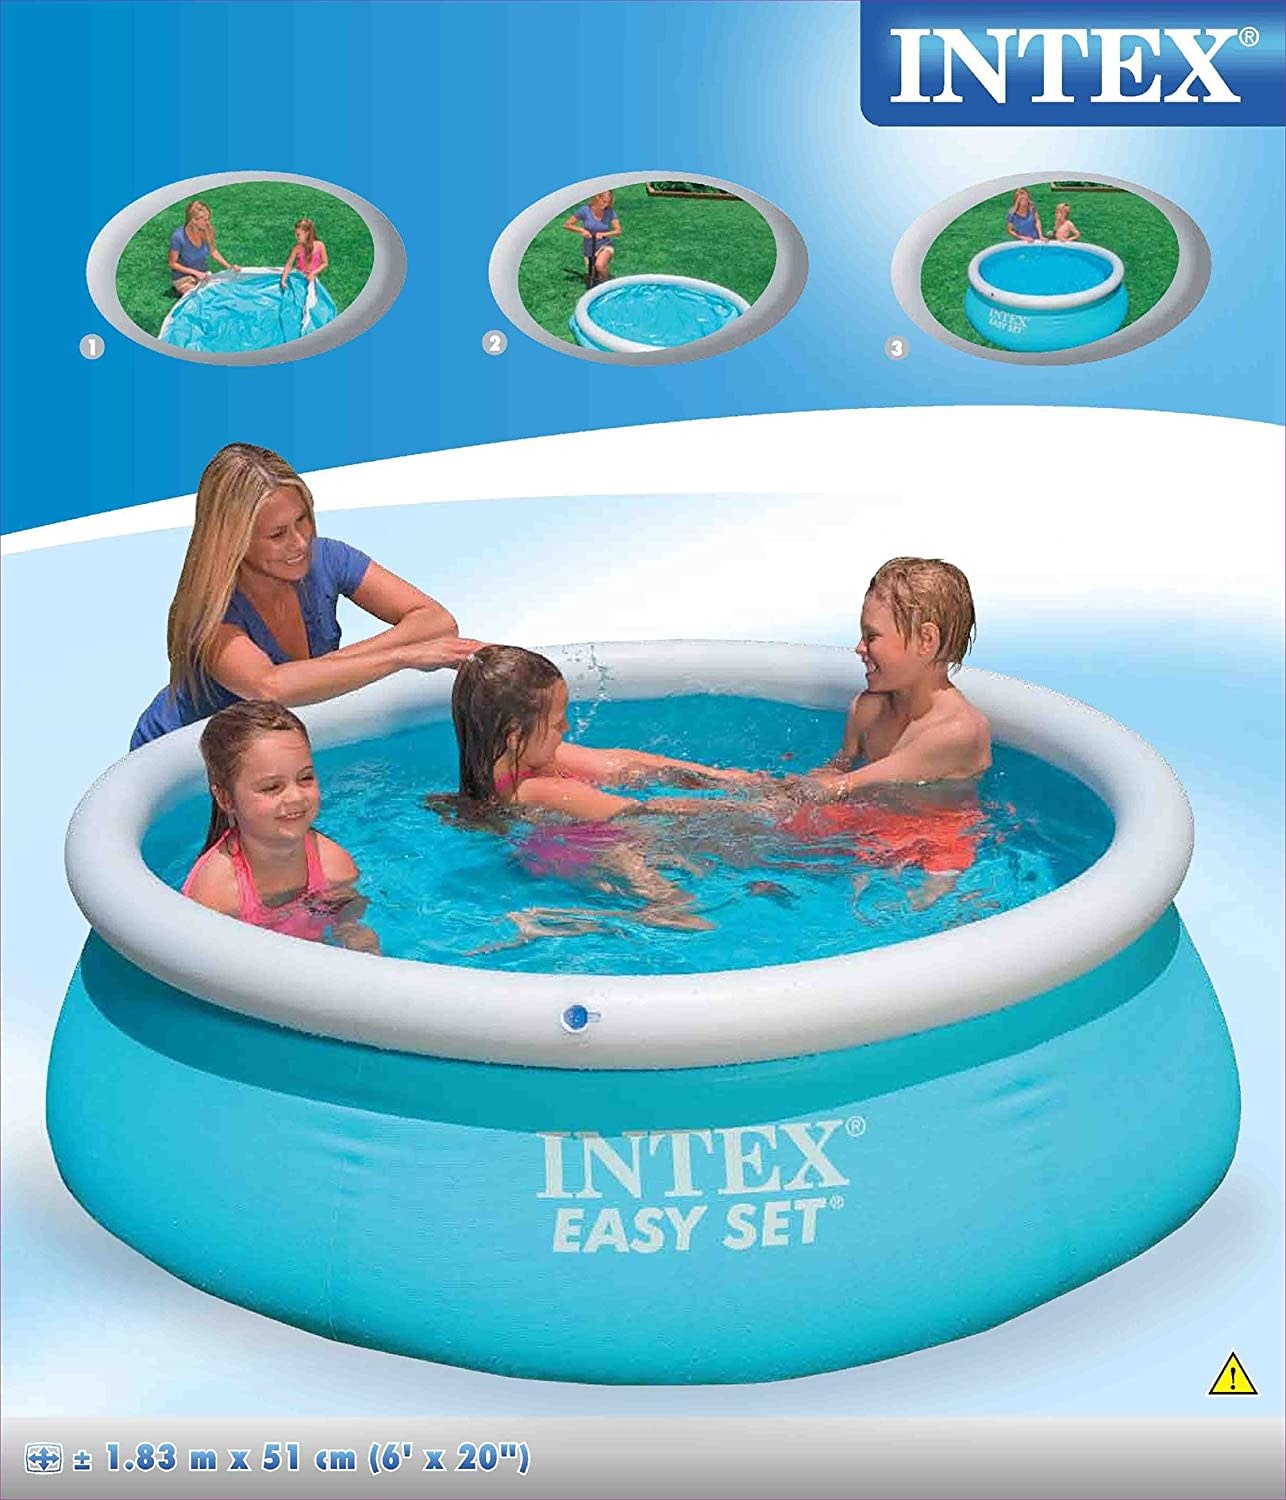 INTEX Intex 6ft x 20in Easy Set Swimming Pool